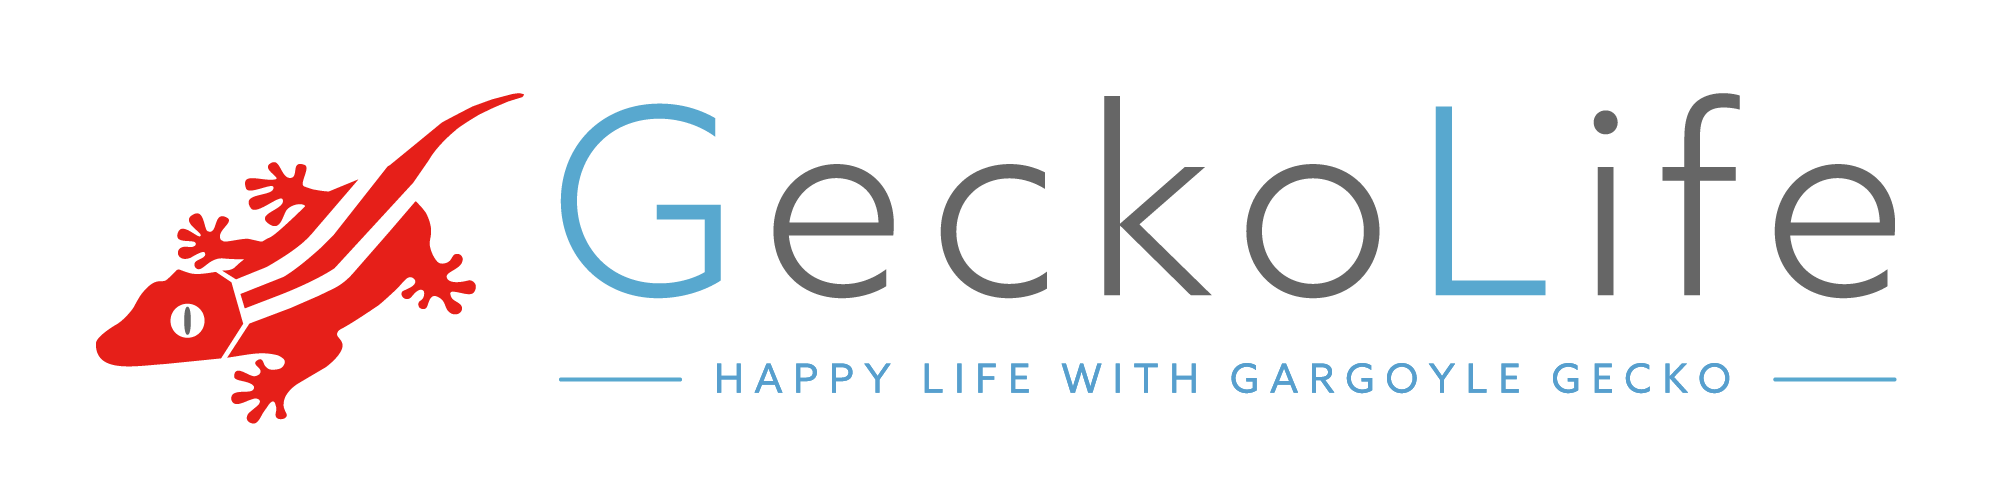 Gecko Life